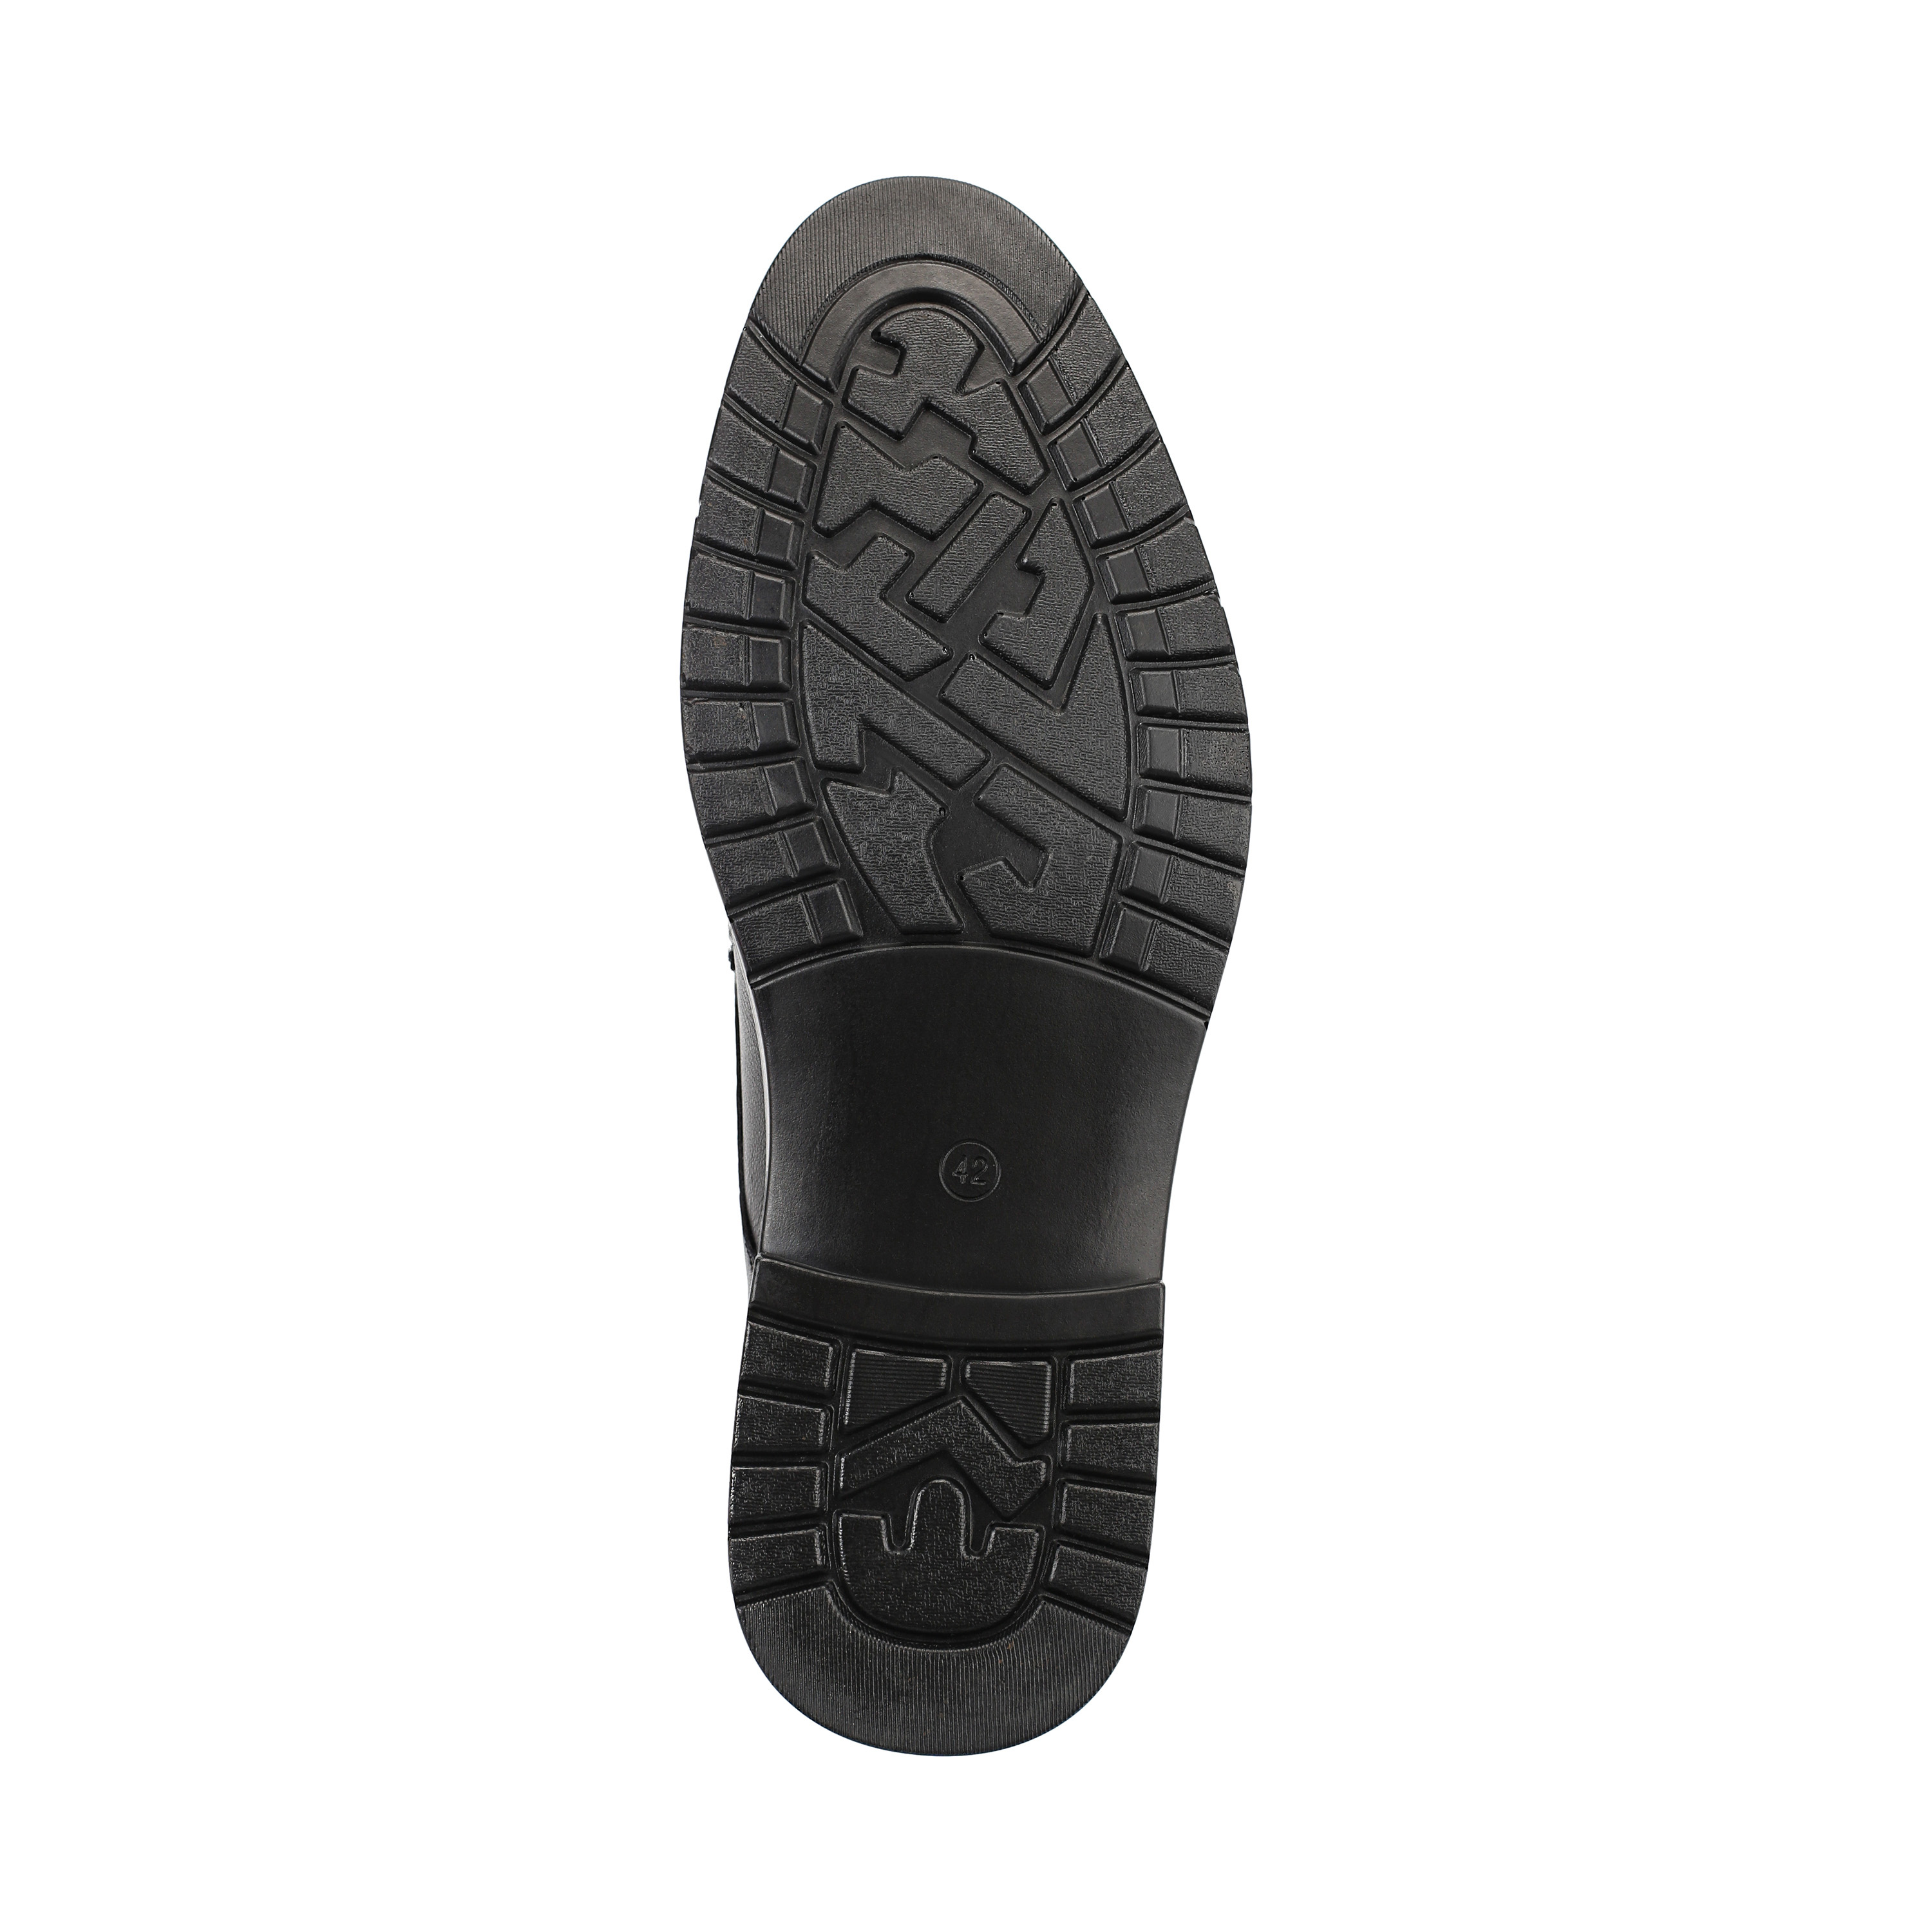 Туфли Thomas Munz 104-019E-1101, цвет черный, размер 41 дерби - фото 4